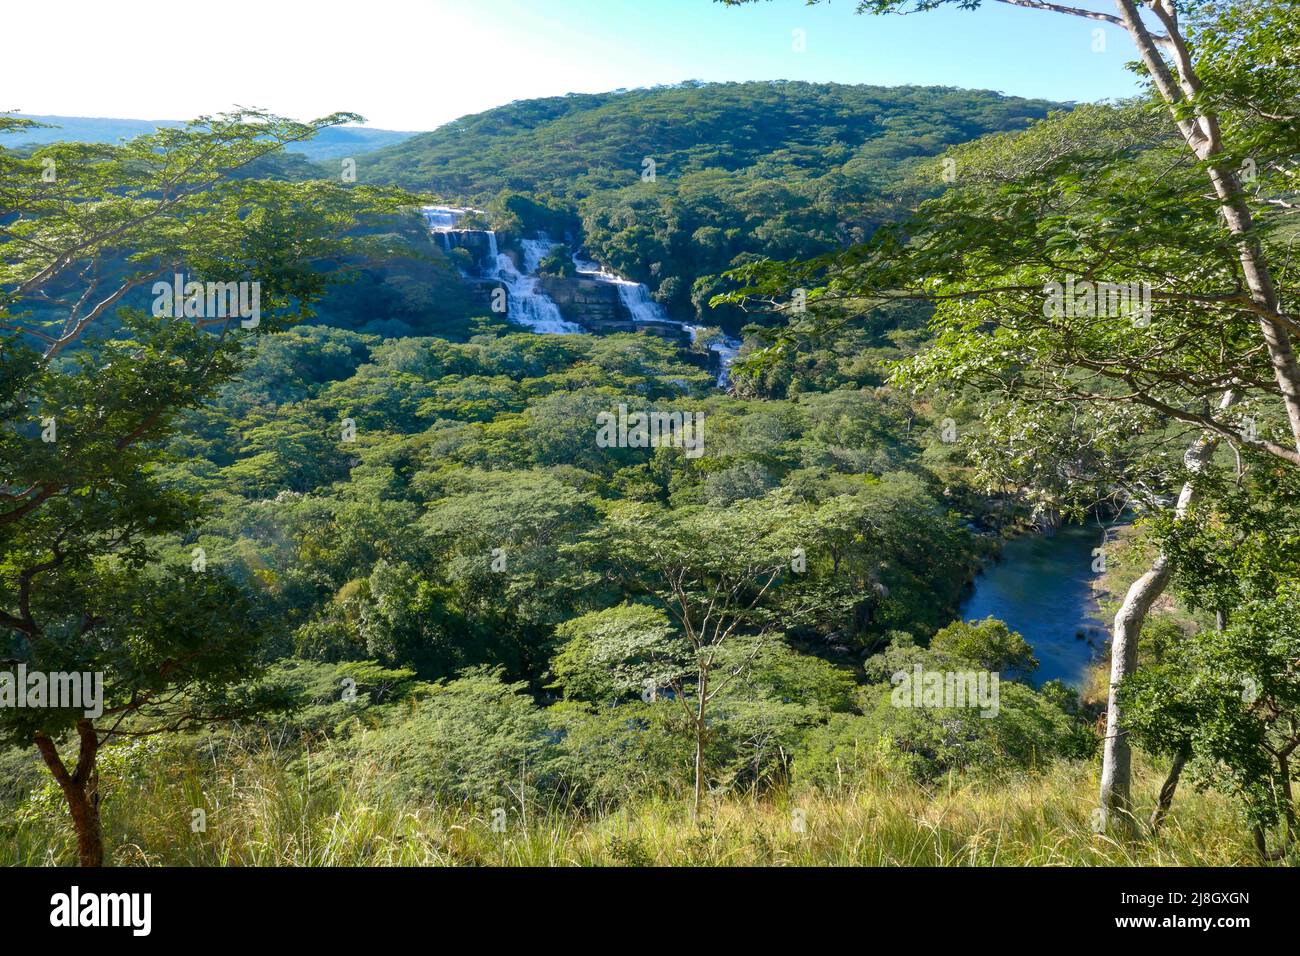 Scenic view of Kimani Waterfalls in Mpanga Kipengele National Reserve in Tanzania Stock Photo